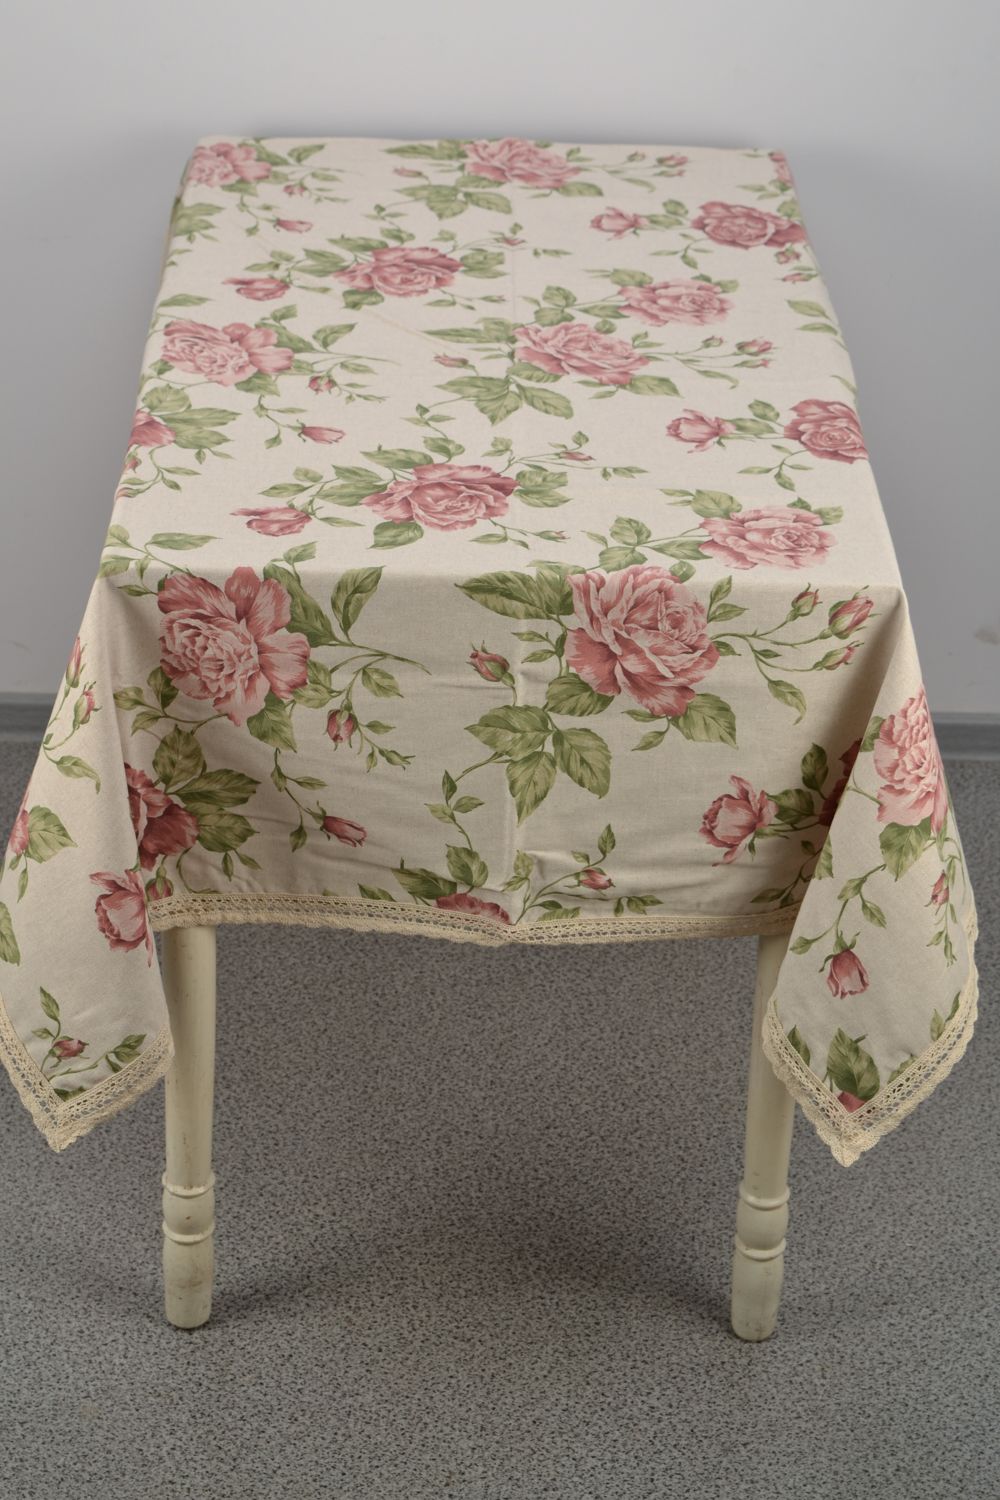 Скатерть на прямоугольный стол тканевая с большими розами фото 2